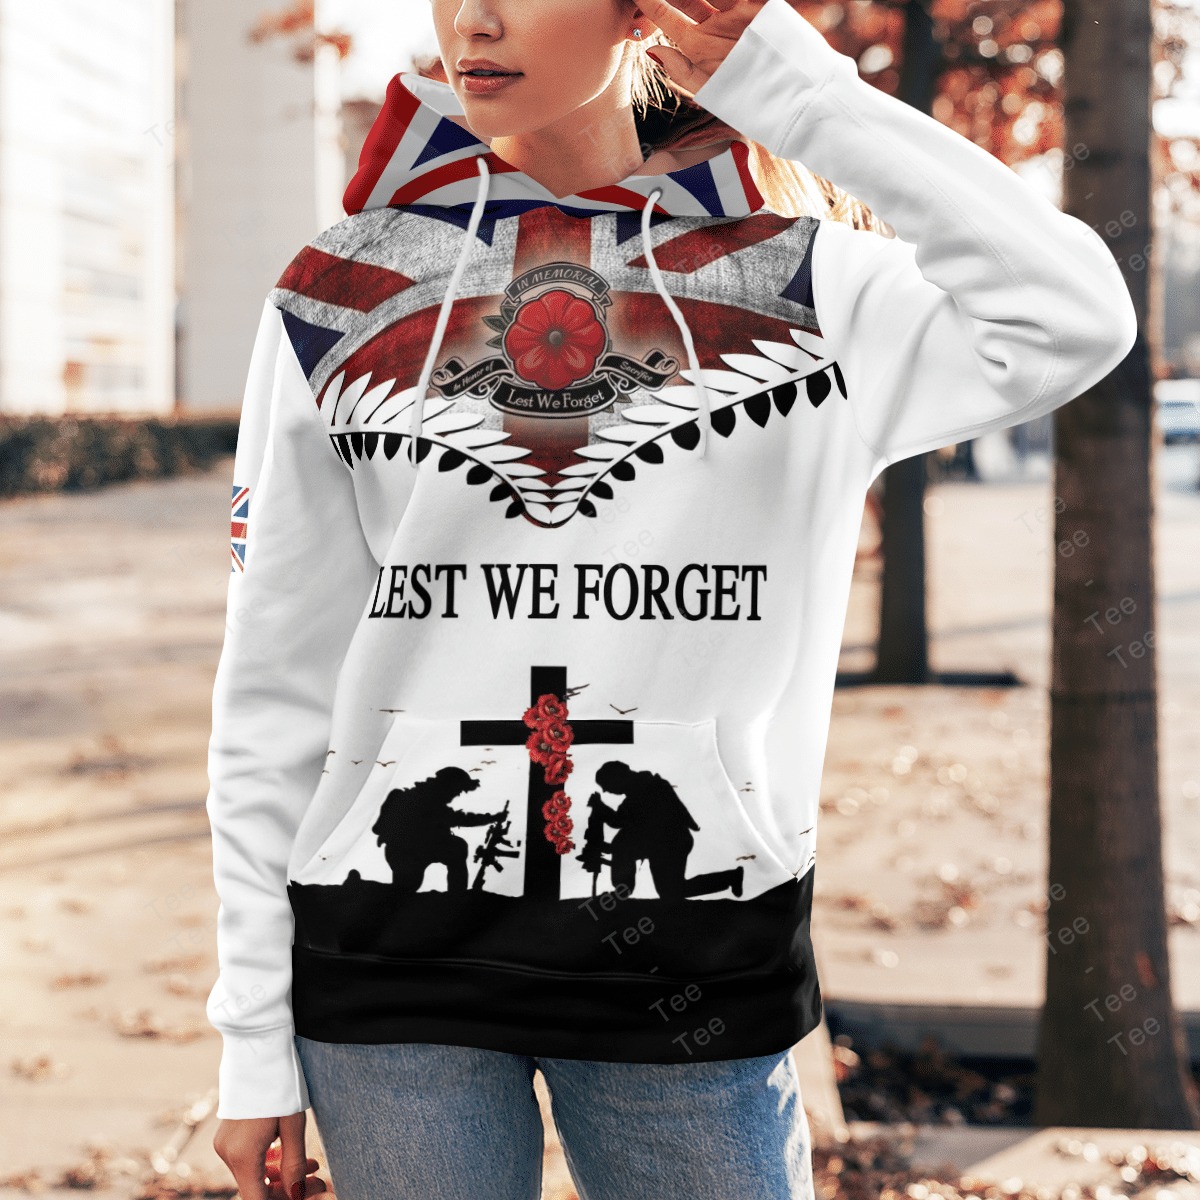 Lest we forget Veteran American flag 3d shirt, hoodie 17